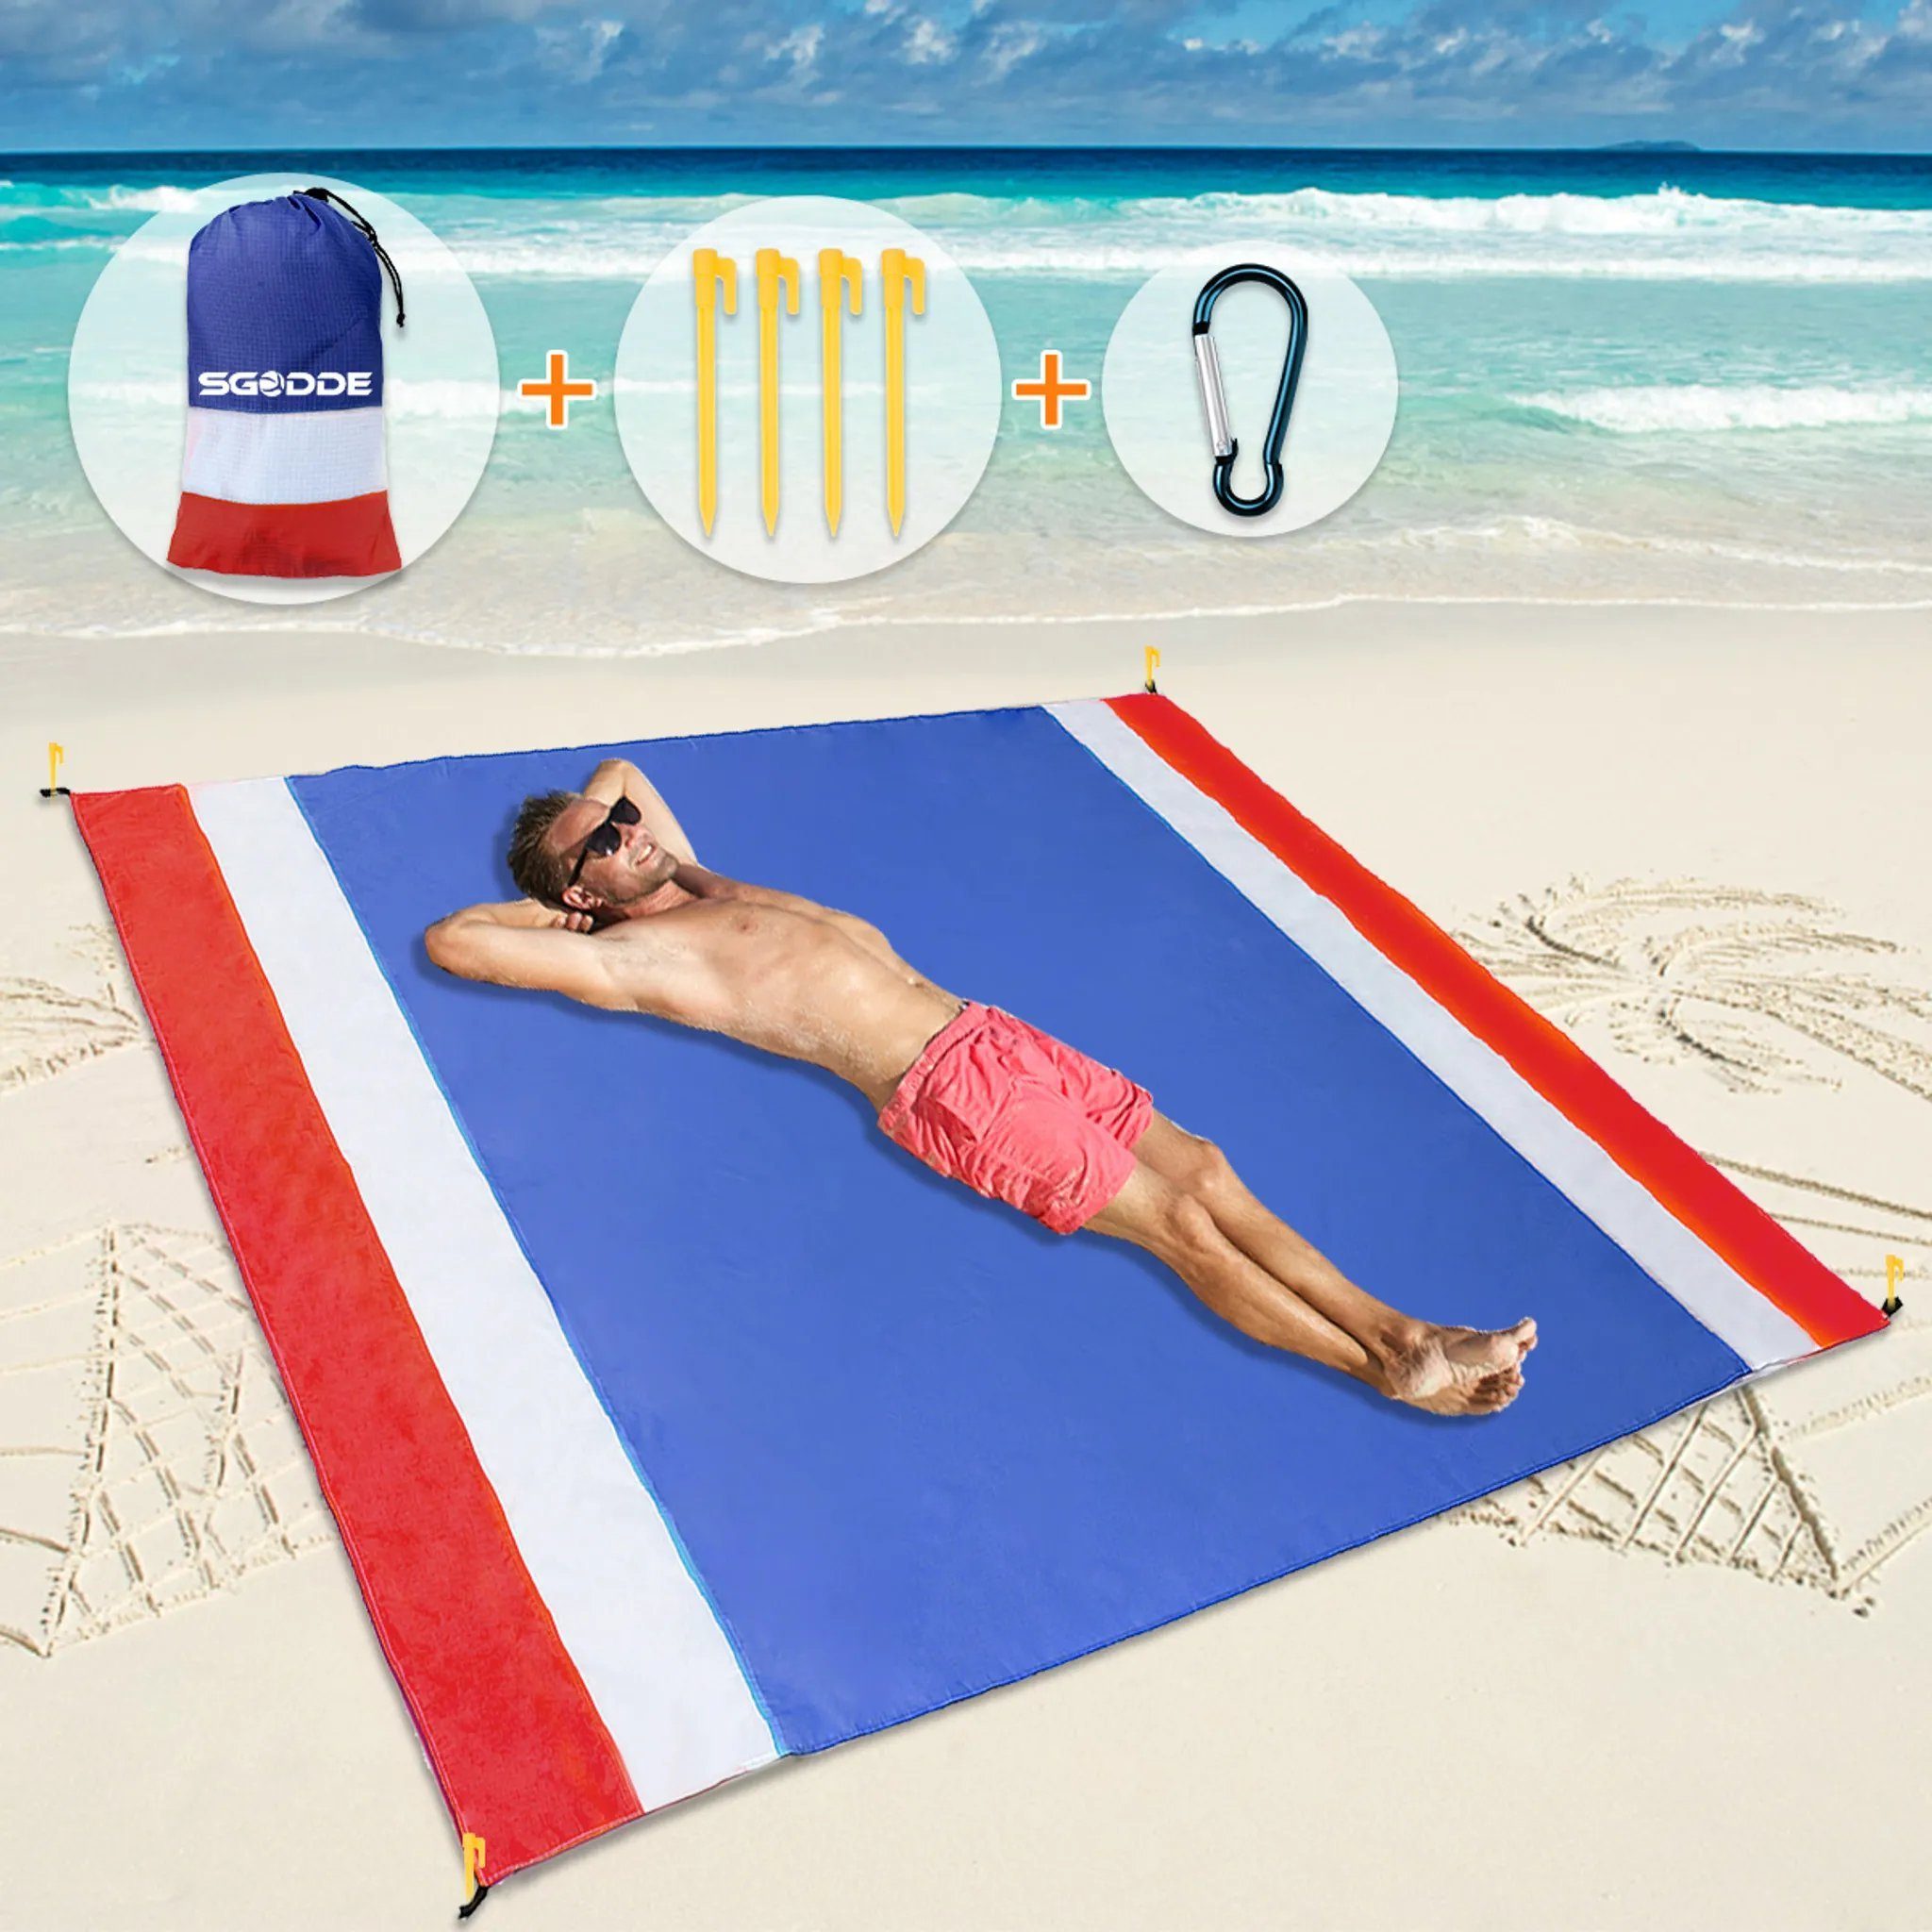 SGODDE Camping Beach Outdoor Polyester, Pocket-sized, Sand-/Wasser-/Staubabweisend Matte, Strandtuch